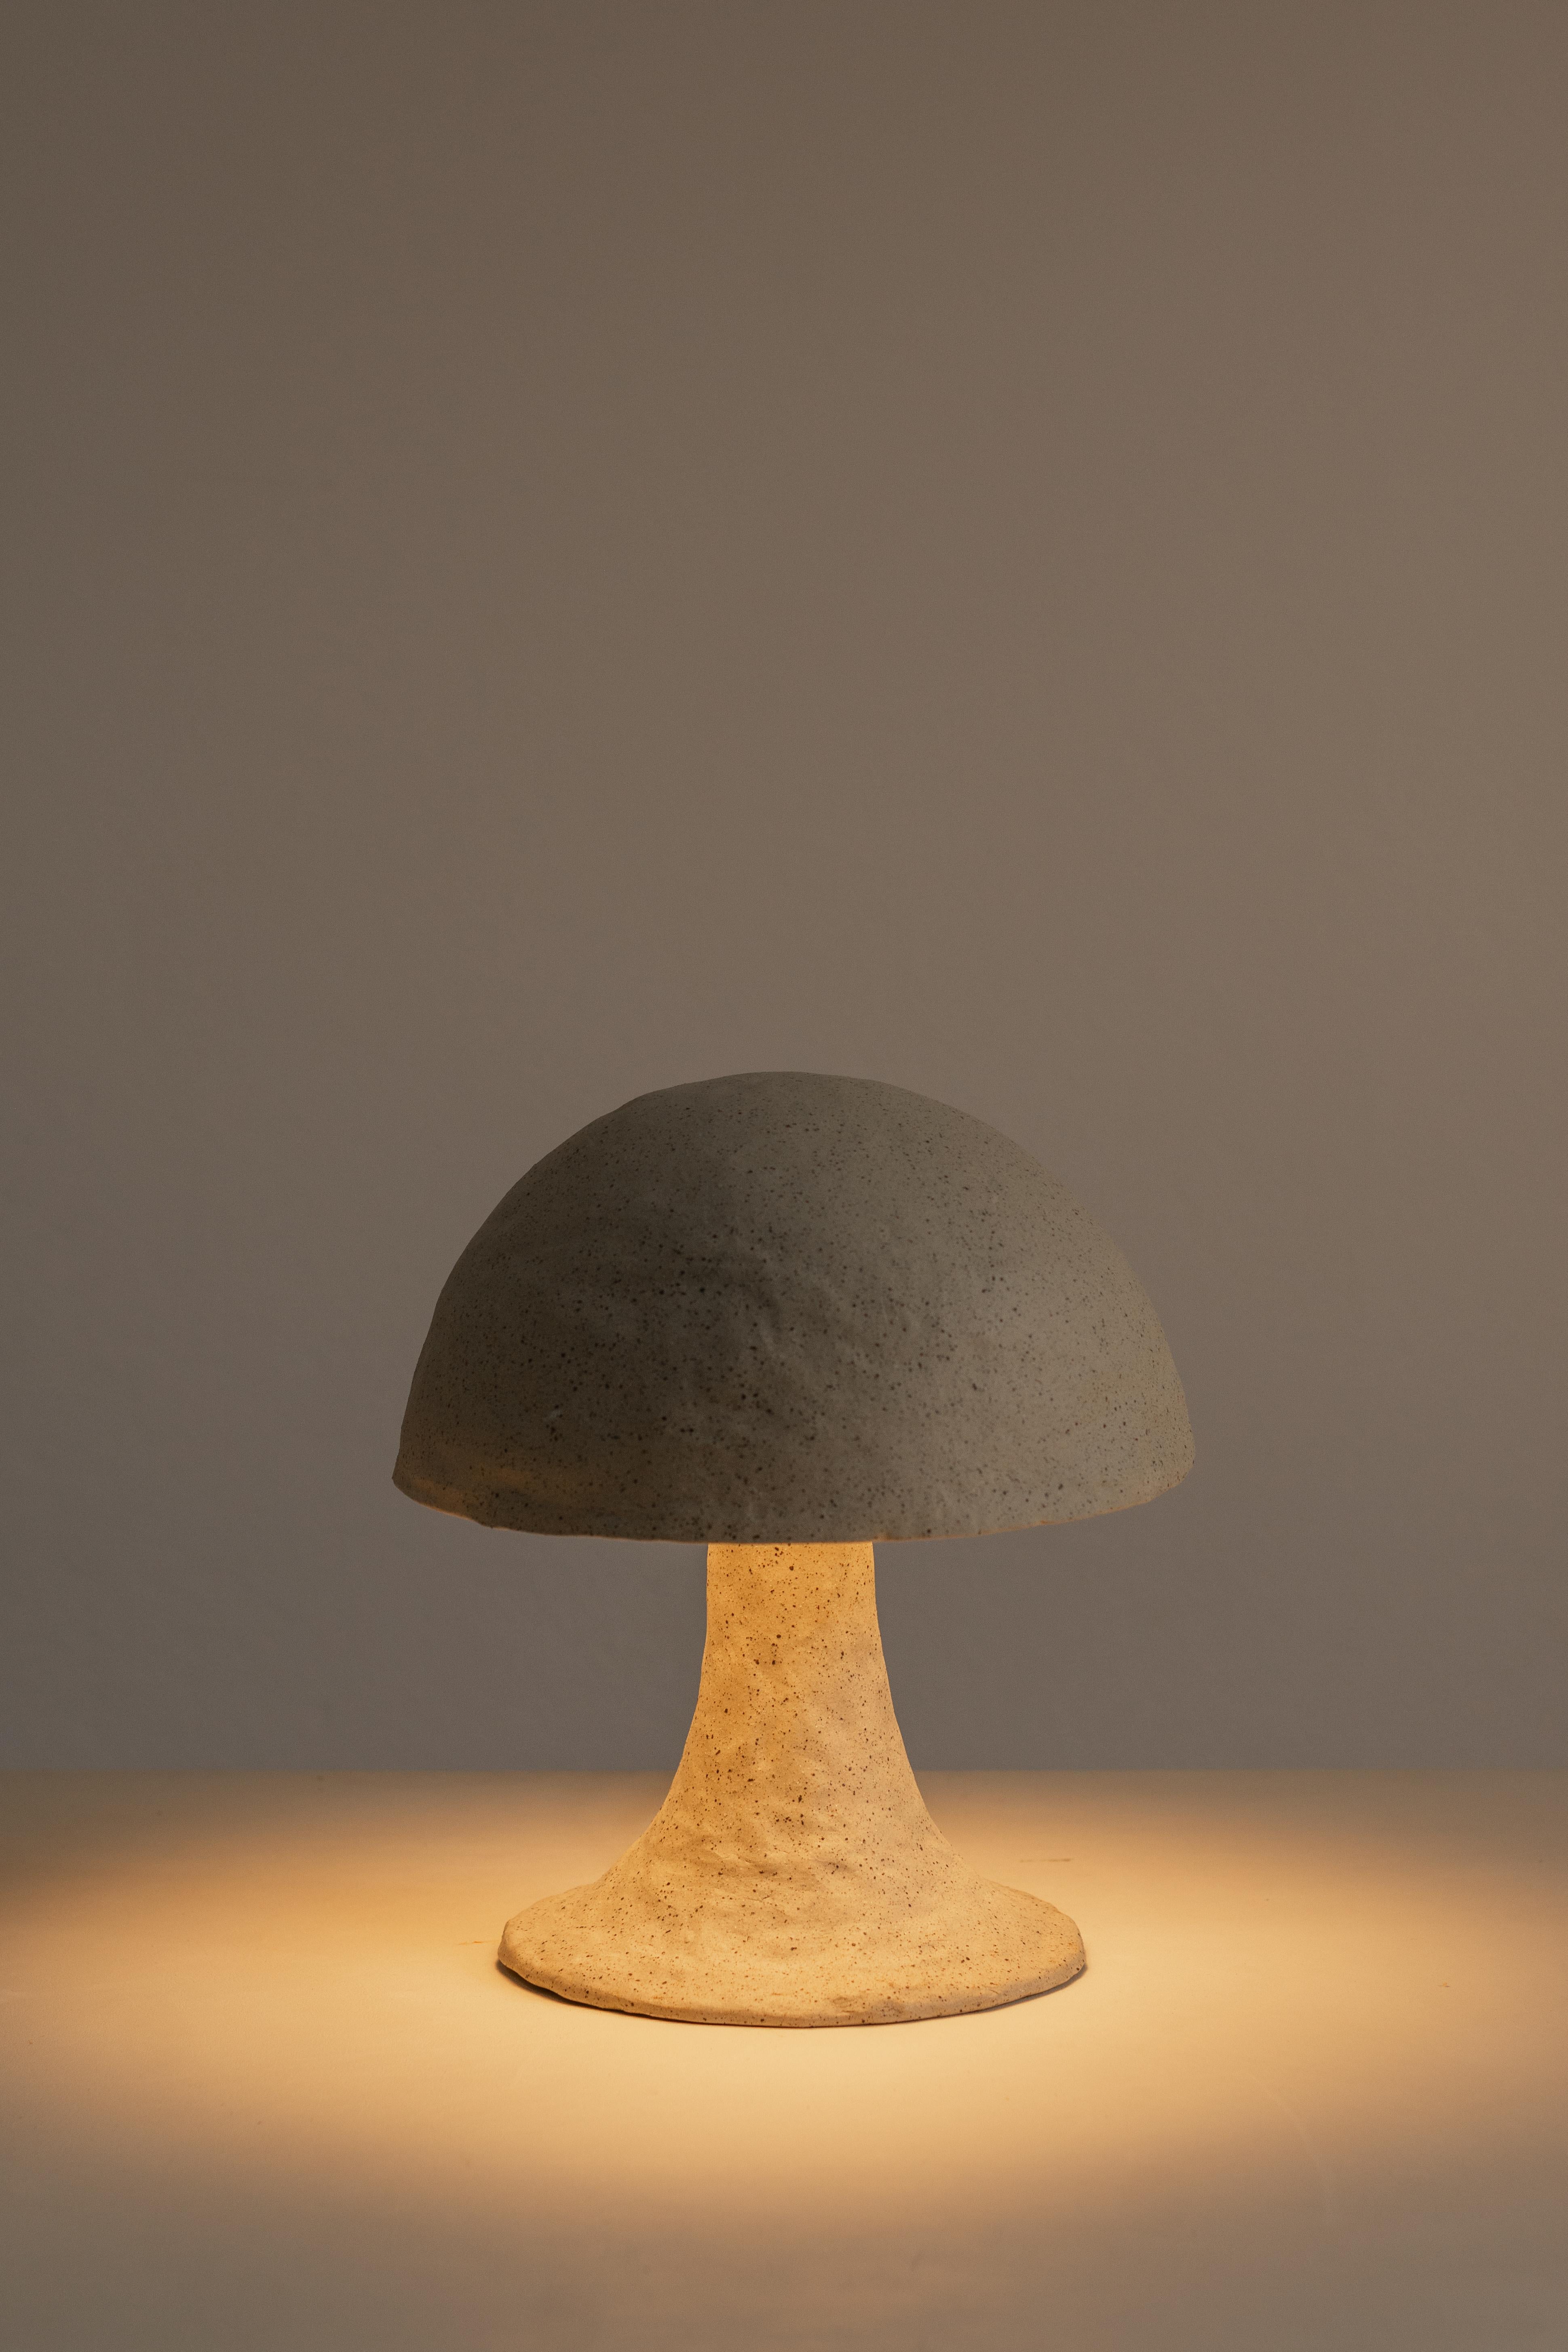 Die Amanita Muscaria-Keramiklampe ist ein Zeugnis für die Kunstfertigkeit und den Einfallsreichtum des menschlichen Geistes. Sein einzigartiges Design, inspiriert von den zauberhaften Pilzen des Waldes, schafft eine unwirkliche Atmosphäre, die dazu